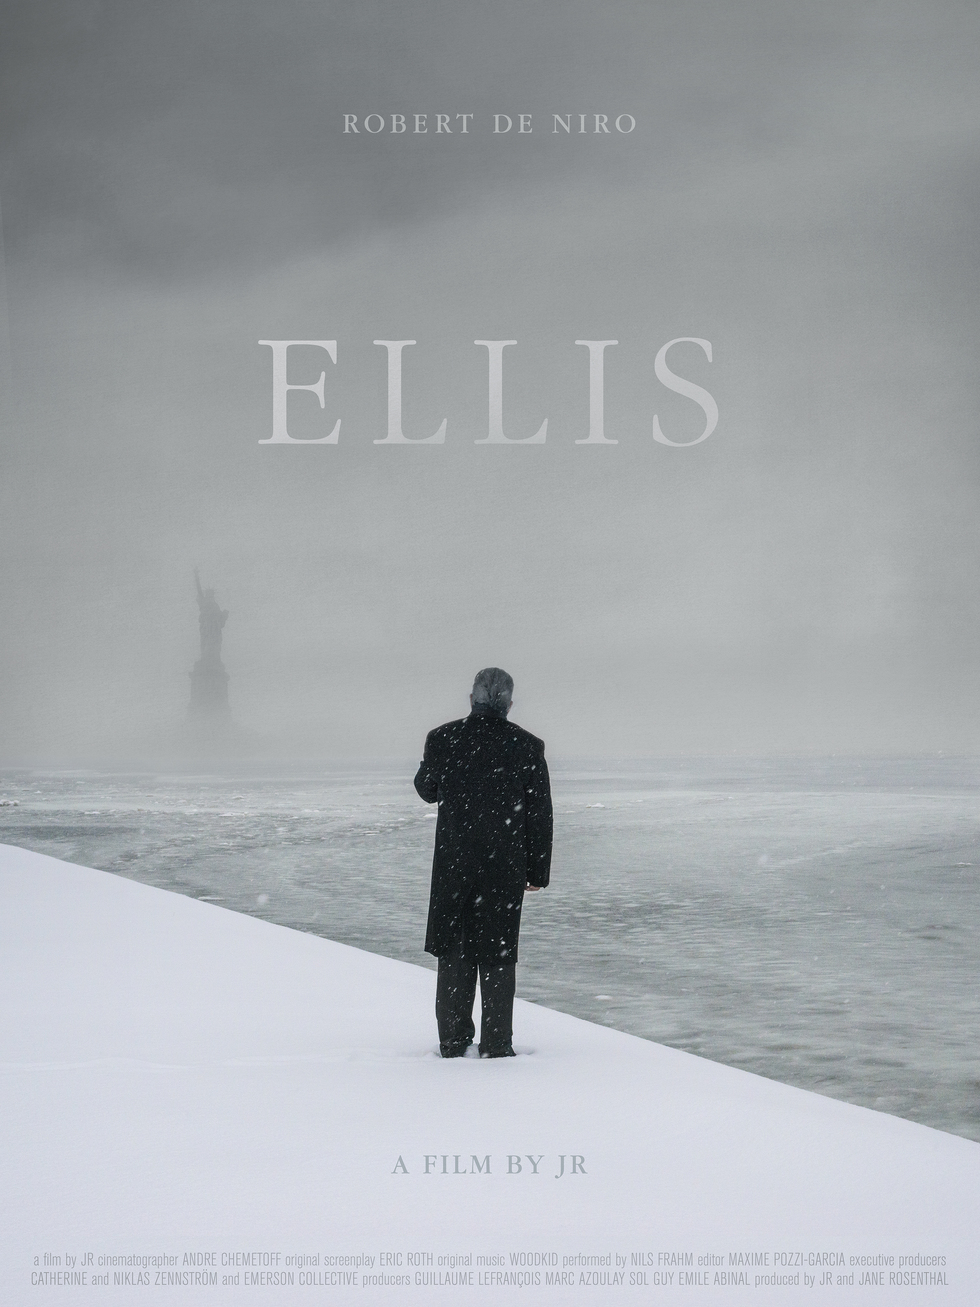 Ellis, un film di JR con Robert De Niro